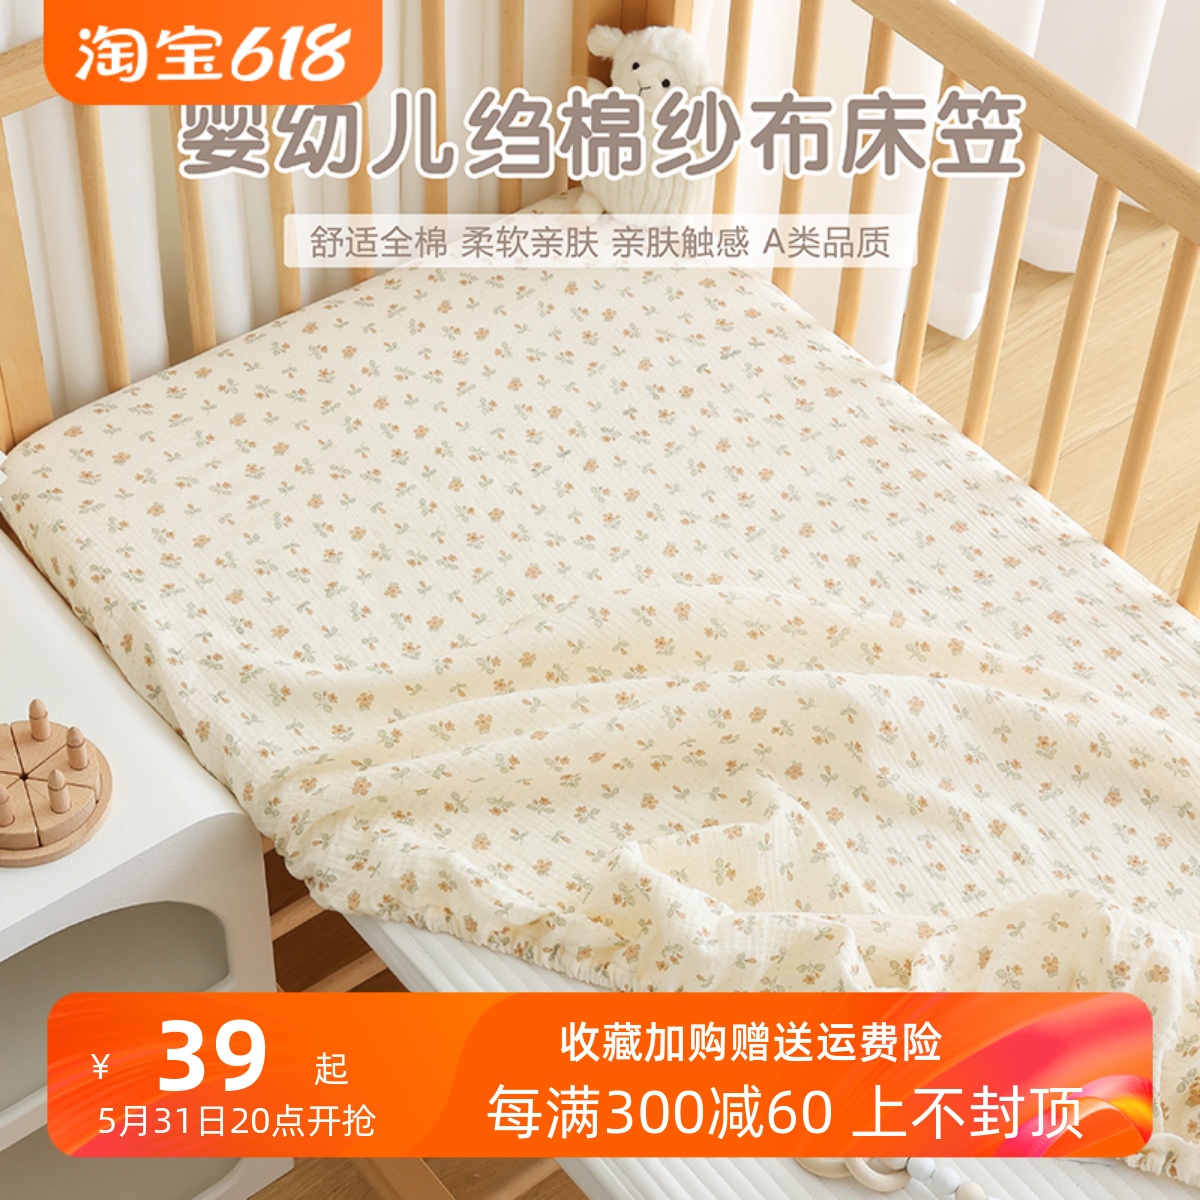 婴儿床床笠纯棉a类新生儿床上用品宝宝床单幼儿园儿童拼接床垫套 婴童用品 床单 原图主图